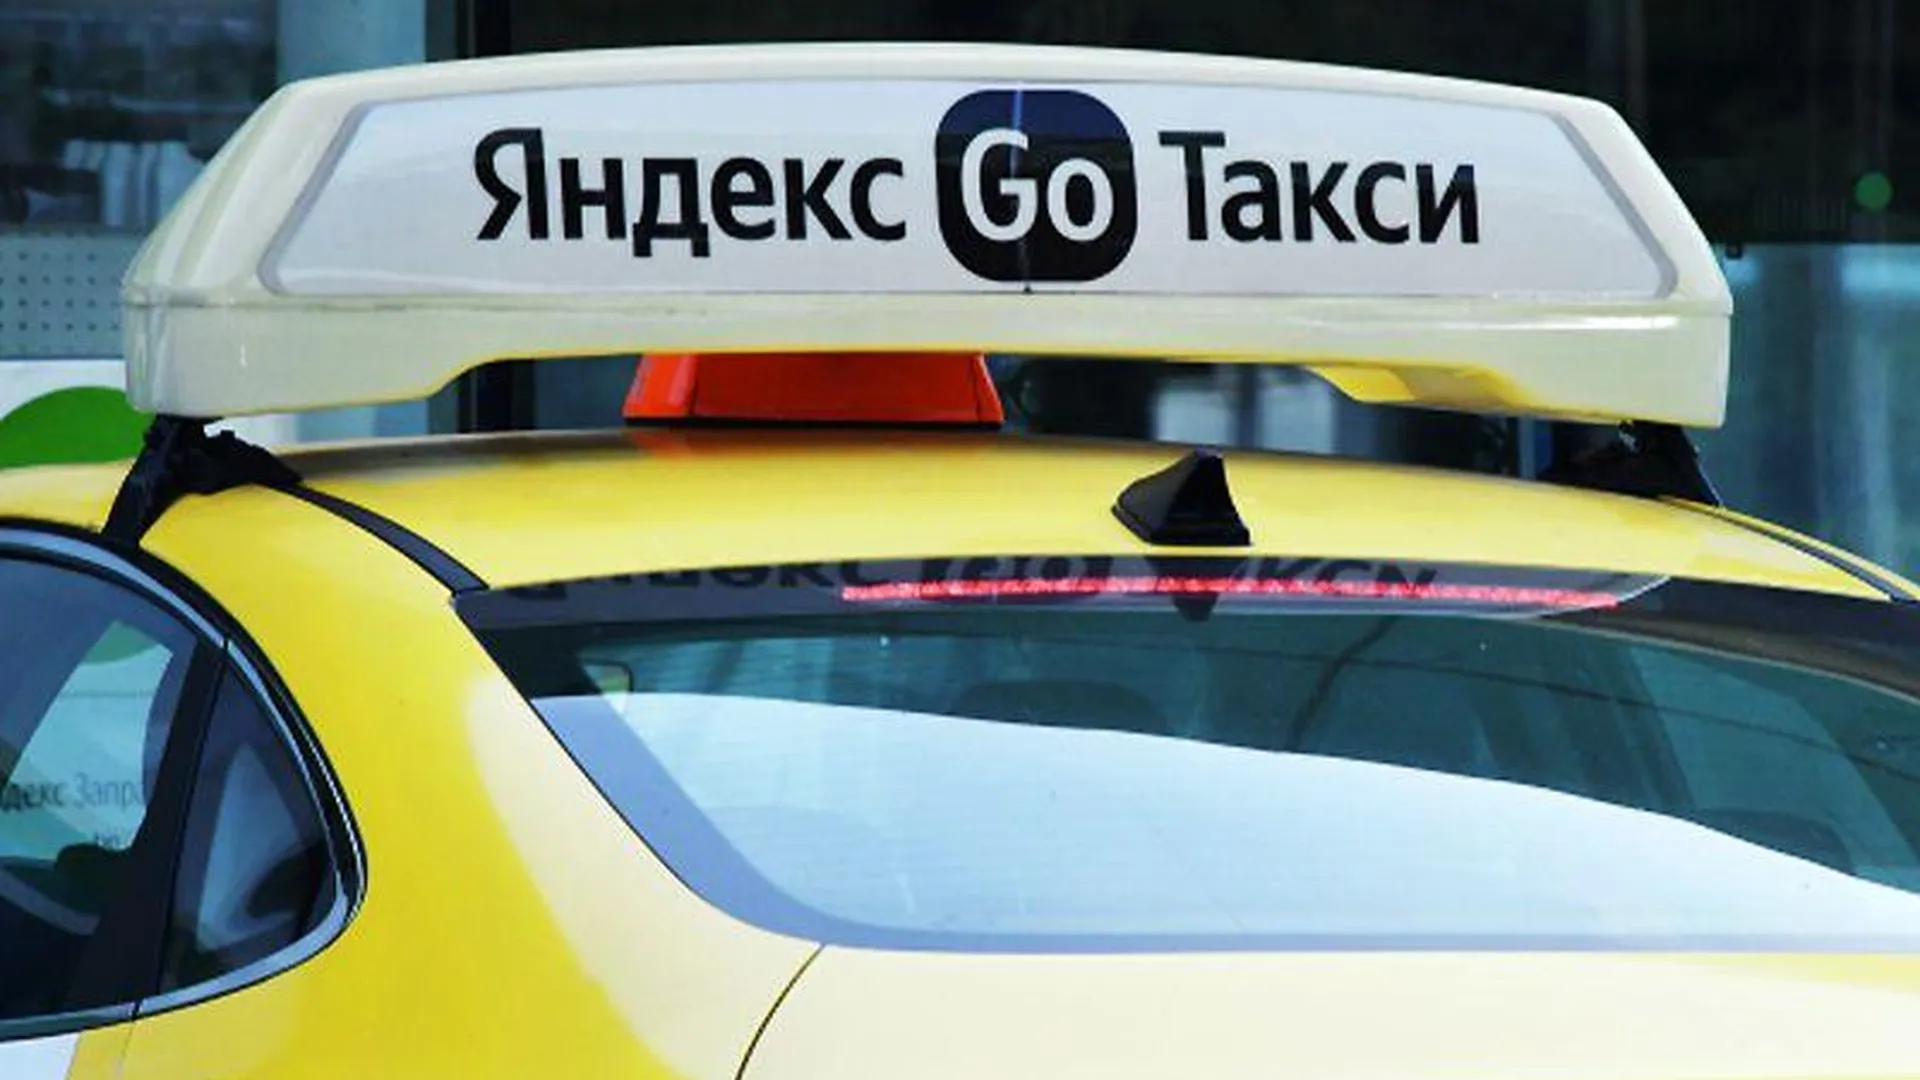 «Подсела девушка, через месяц свадьба»: на такси Яндекс.Go можно сэкономить, если взять «попутчика»